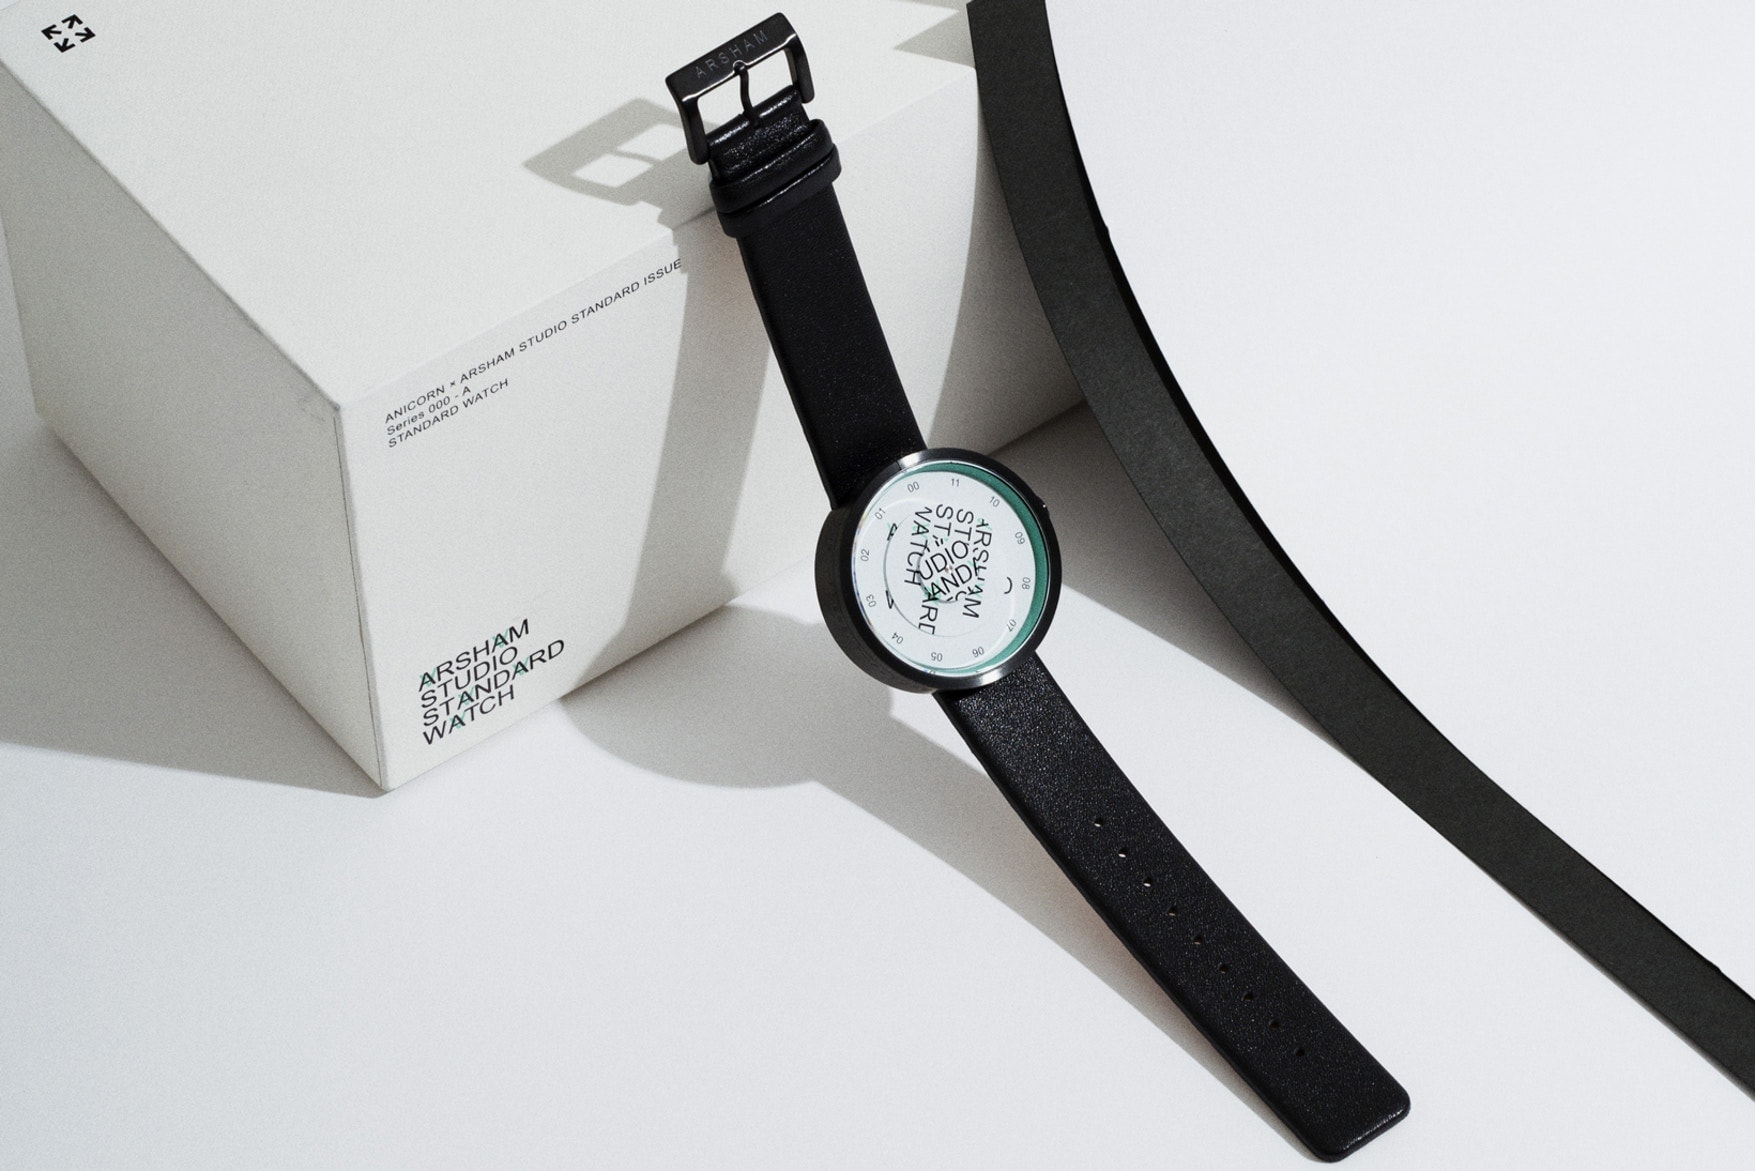 다니엘 아샴 x 애니콘 협업 시계 한정판 daniel arsham anicorn limited edition watch collaboration